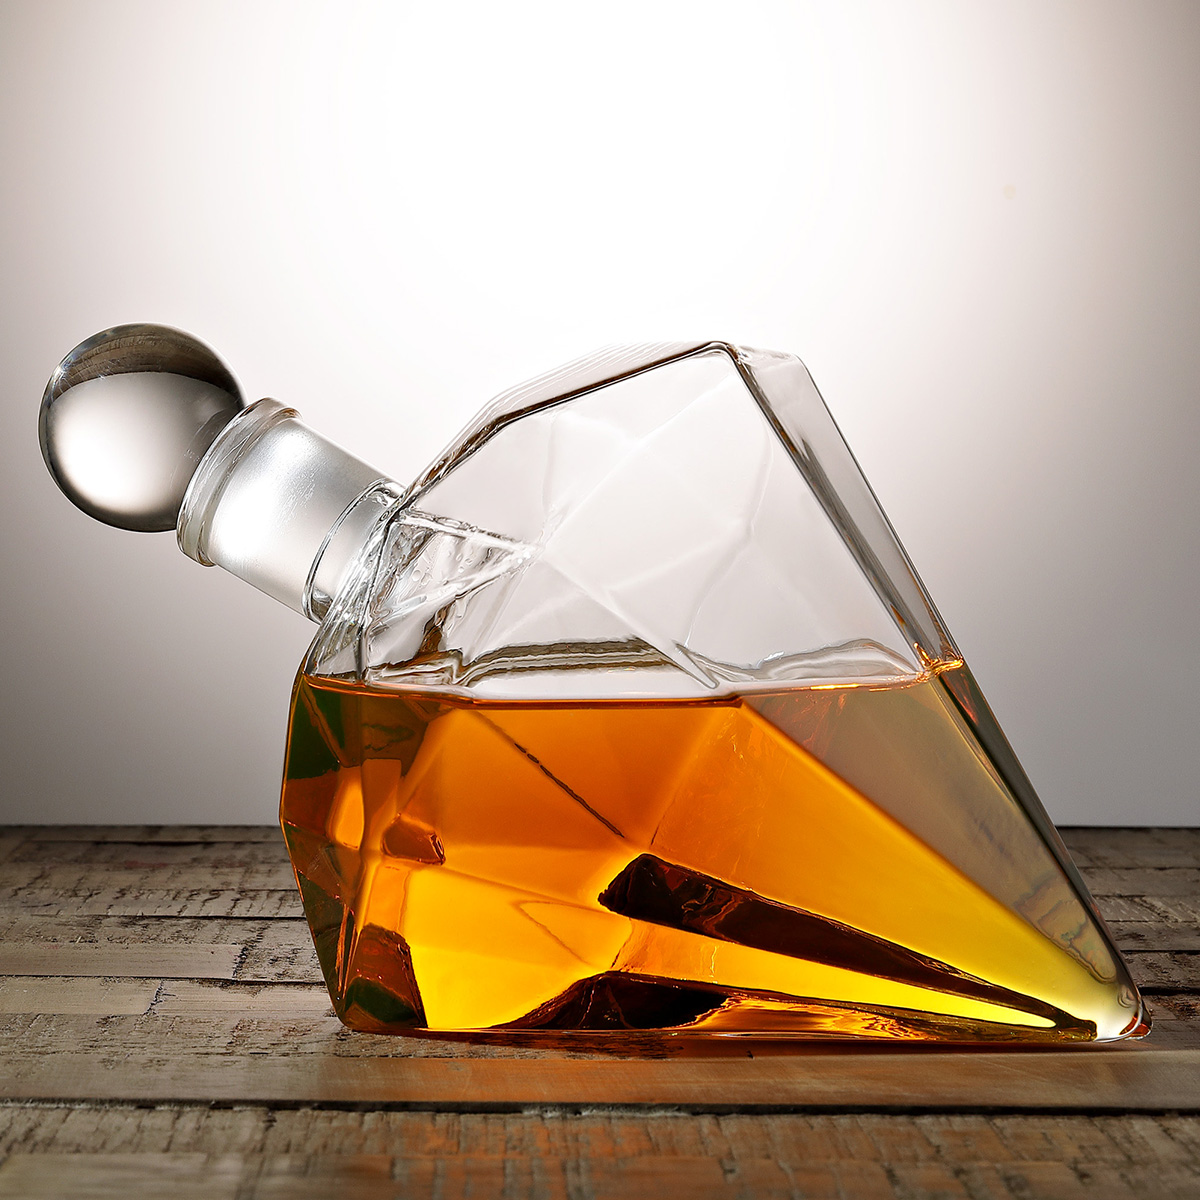 Dekanter Geschenk für Sie Beautify Schillernde Dekanter-Set Glas-Dekanter Dekanter Geschenk-Set Whisky Dekanter